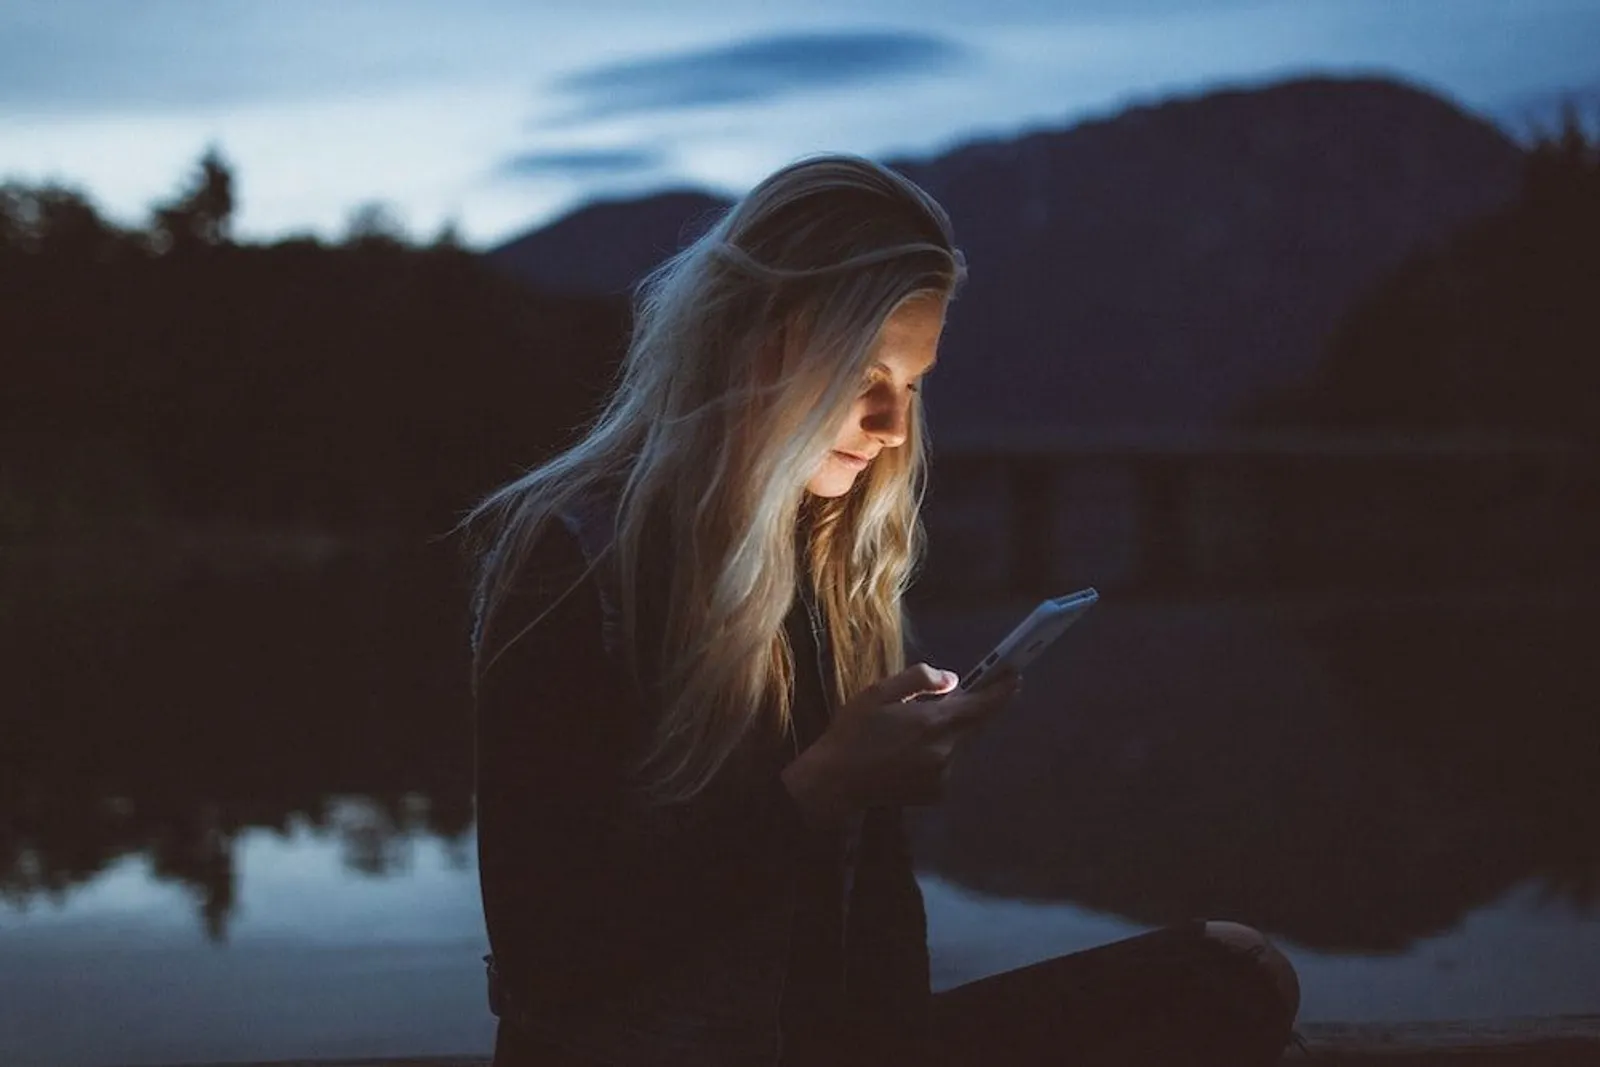 Chat Mulai Membosankan? Ini 9 Cara Mengatasi Dry Texting di Dating App